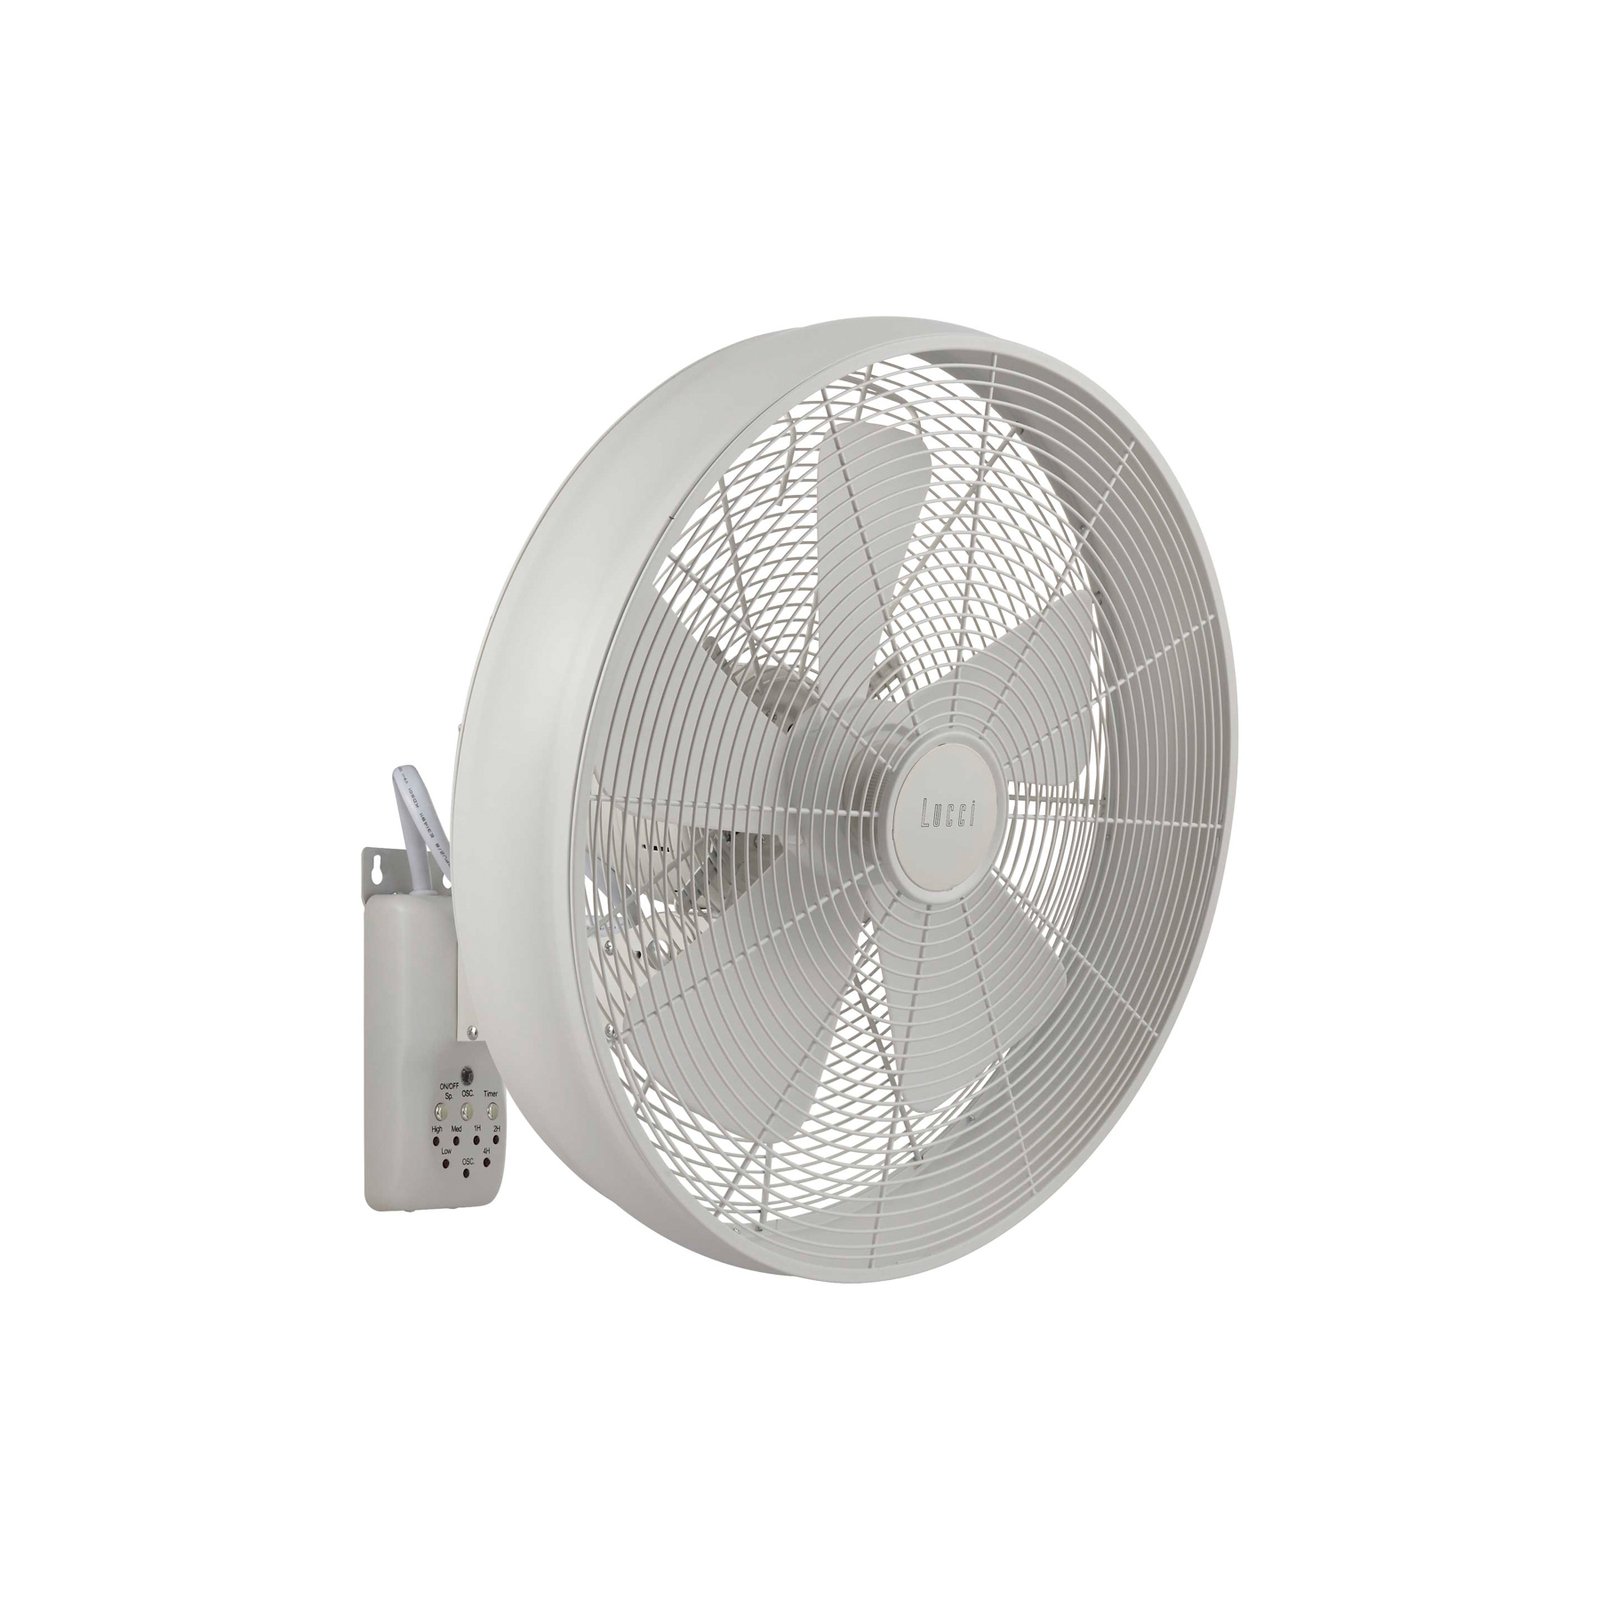 Beacon wall fan Breeze, white, Ø 41 cm, quiet